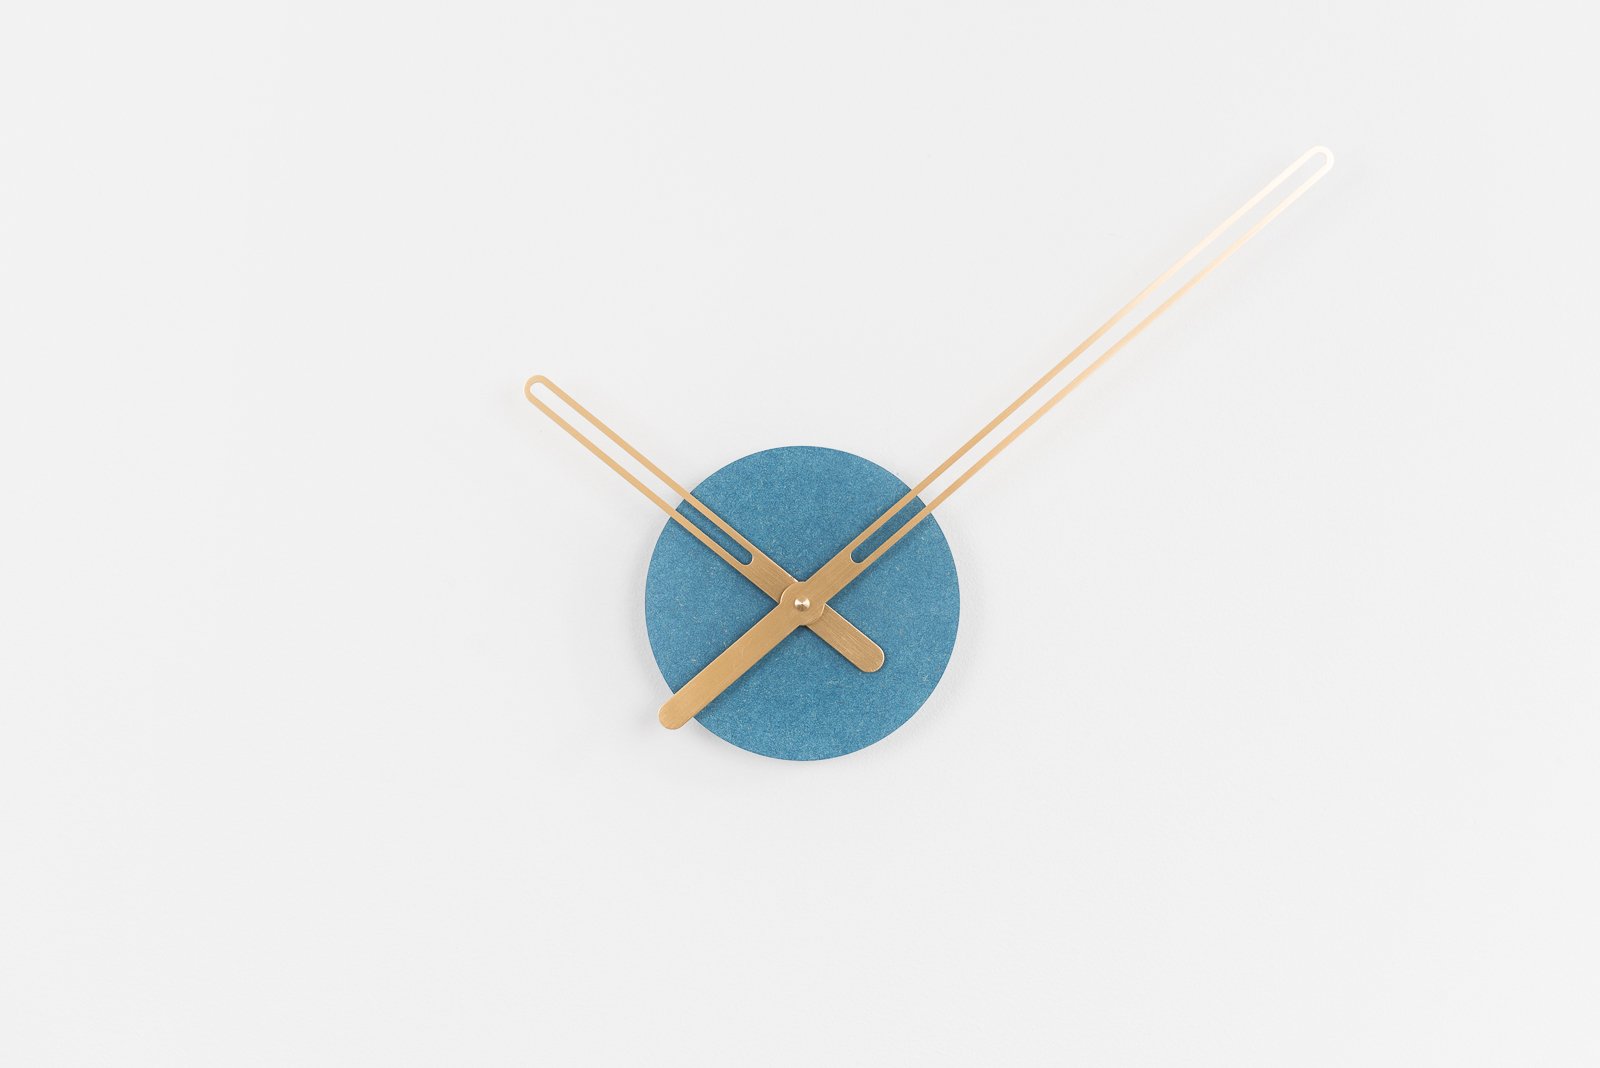 Sweep Wall Clock, The Blue Ocher Series with Brass Clock Hands, Minimalist Scandinavian Design Wall Decor Clock by Christopher Nordahl Konings